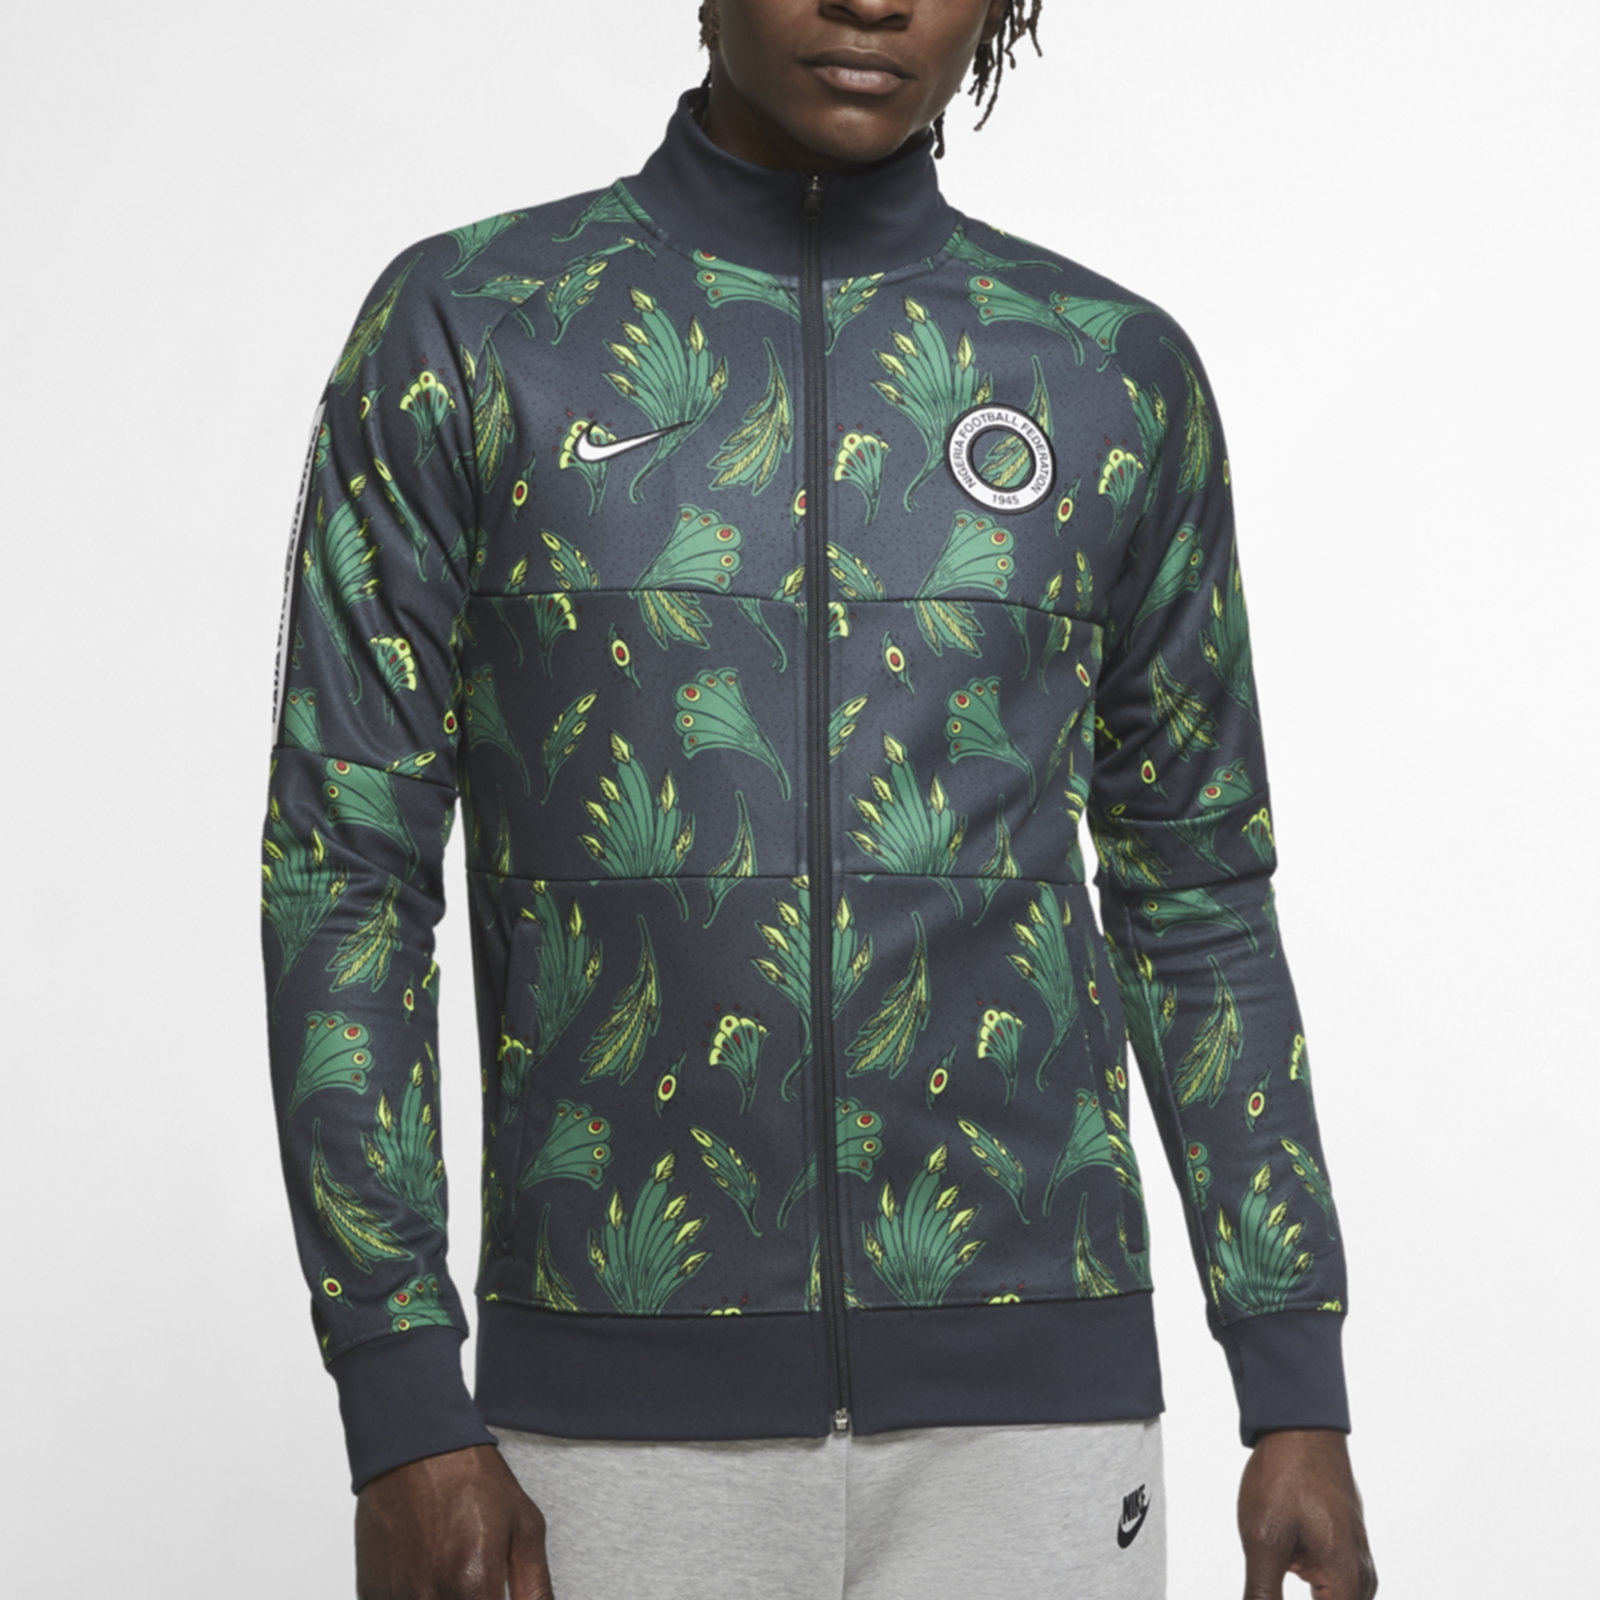 Ligeramente genio Cuota de admisión Nike Nigeria Men's Football Tracksuit Jacket - Green | CV3669-364 |  FOOTY.COM